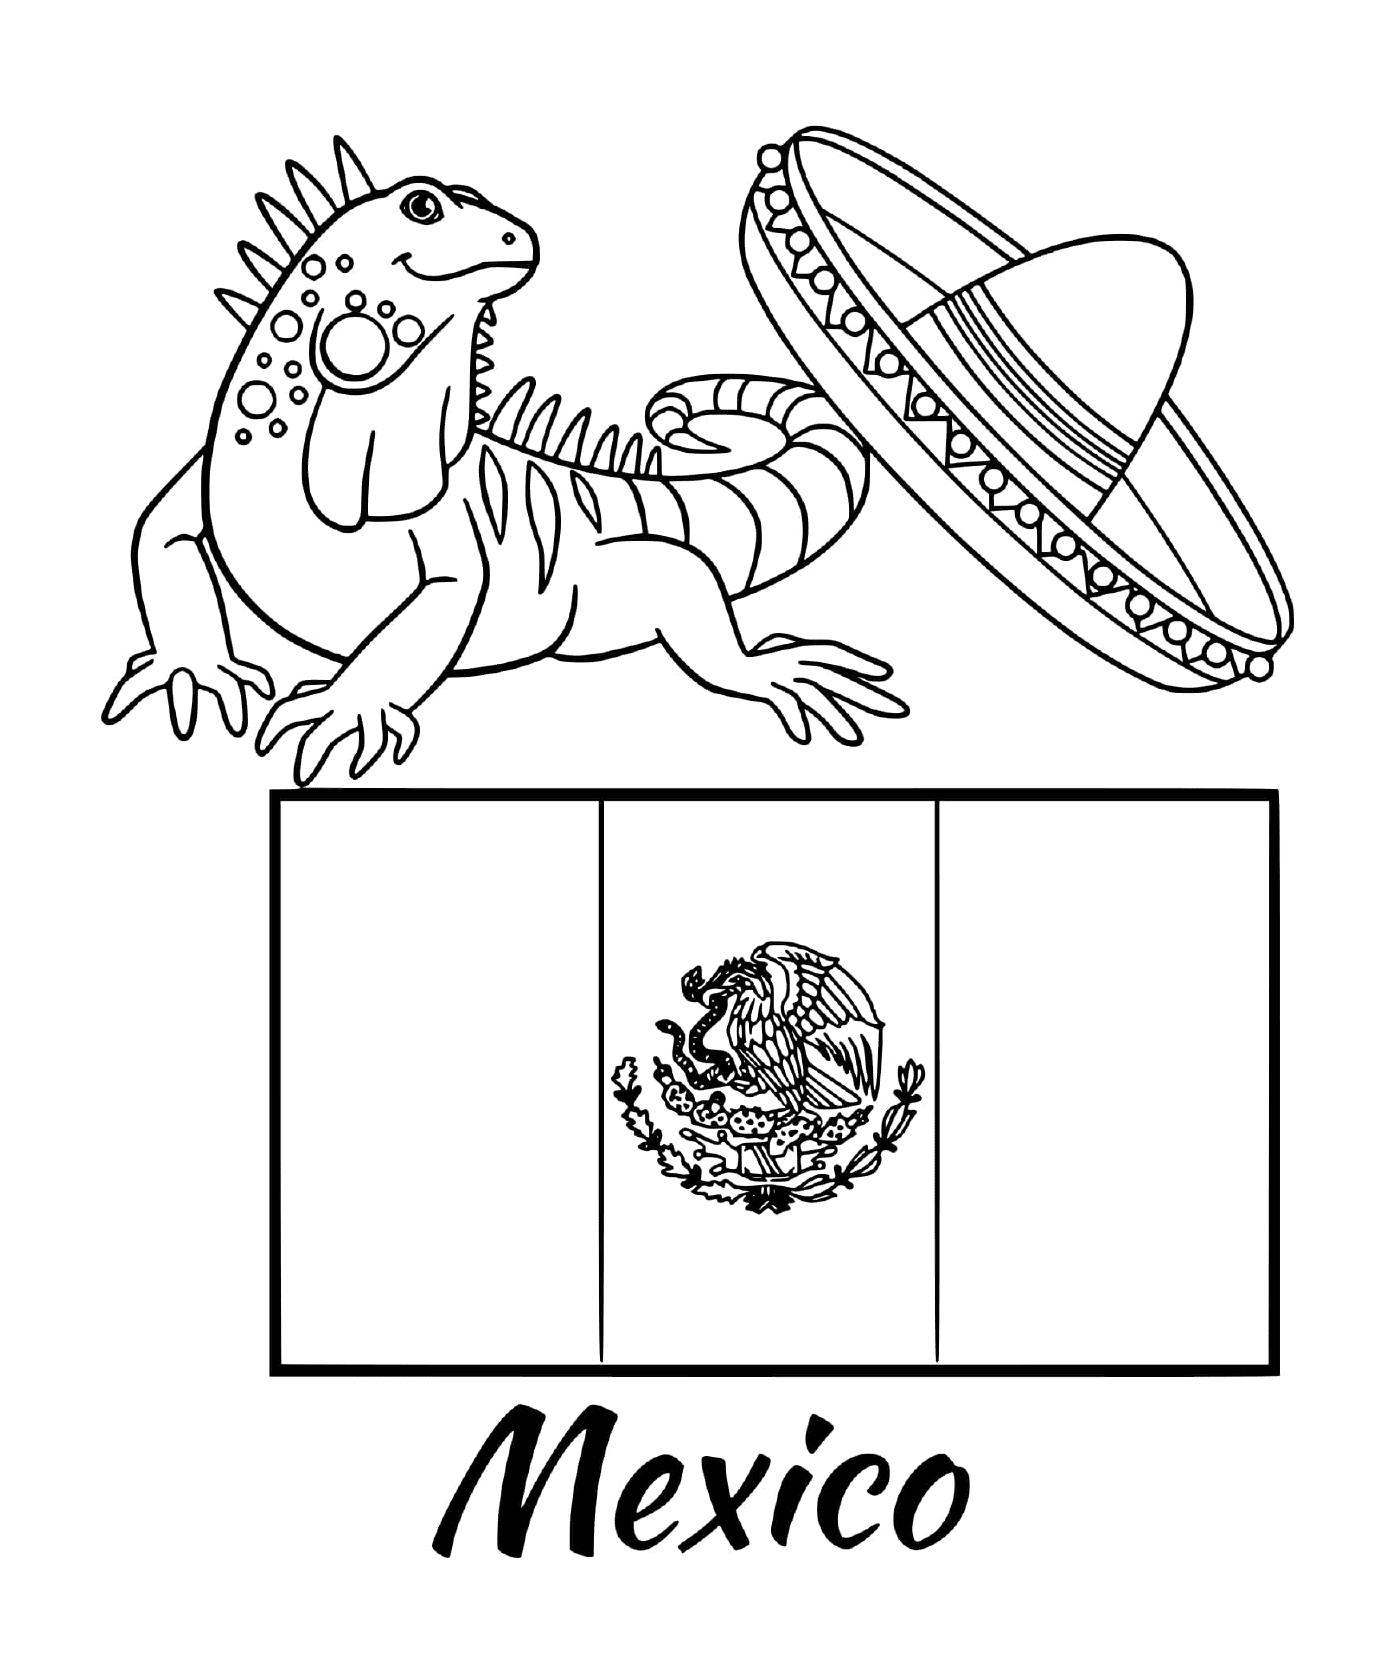  Bandiera del Messico con iguana 